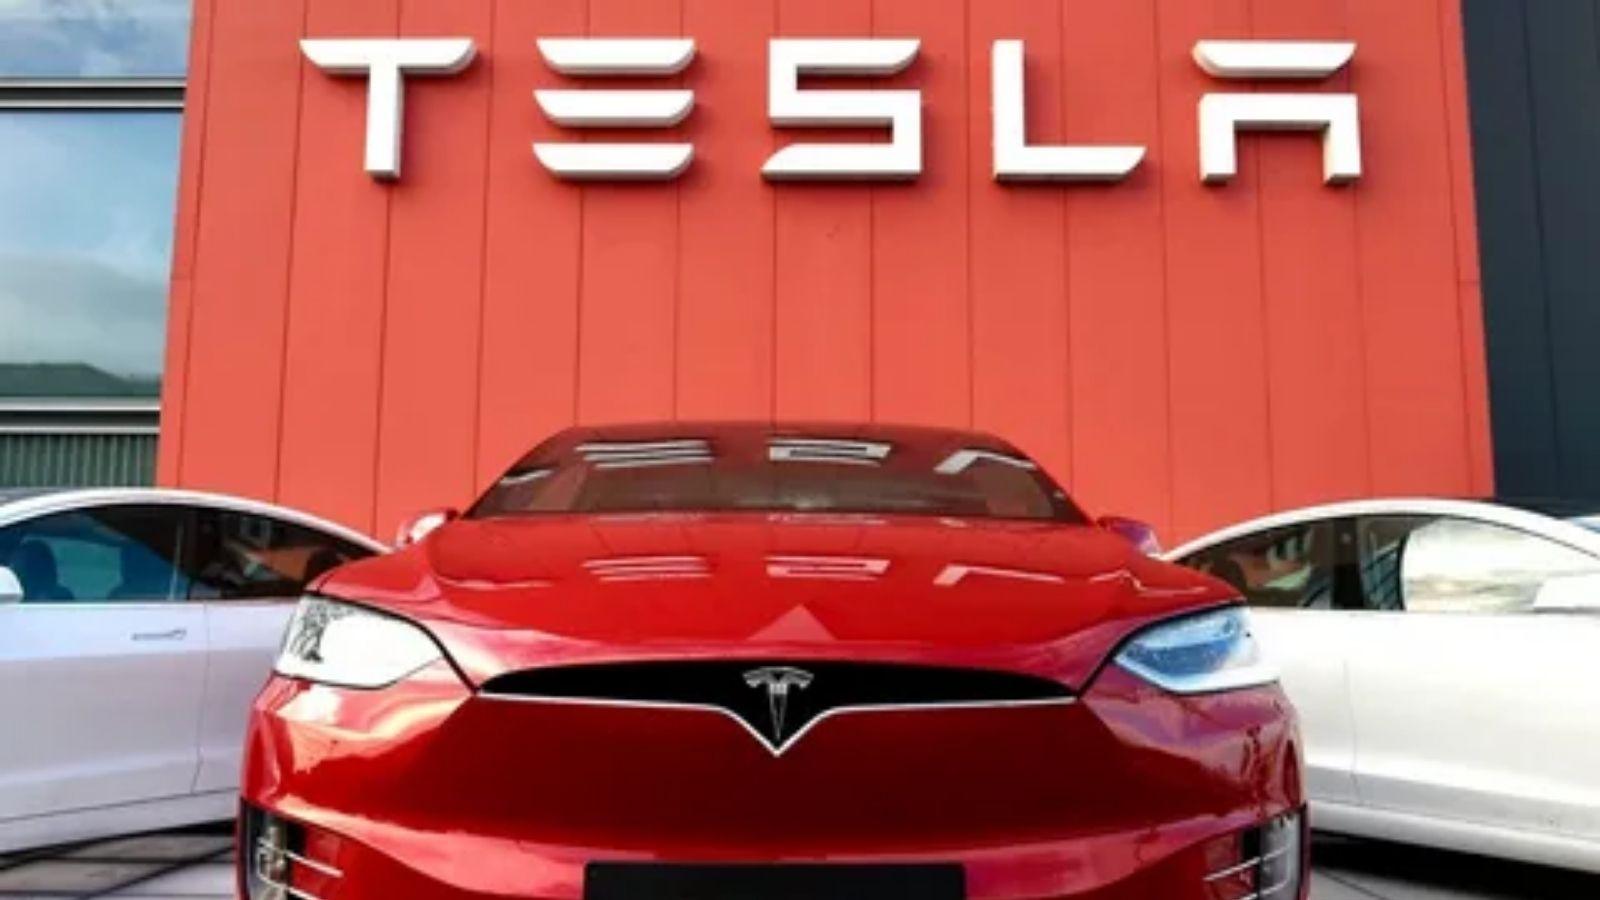 Elektrikli otomobil sektörünün en büyük isimlerinden olan Tesla, çıkan bazı iddialara göre büyük bir işten çıkarma yapabilir.